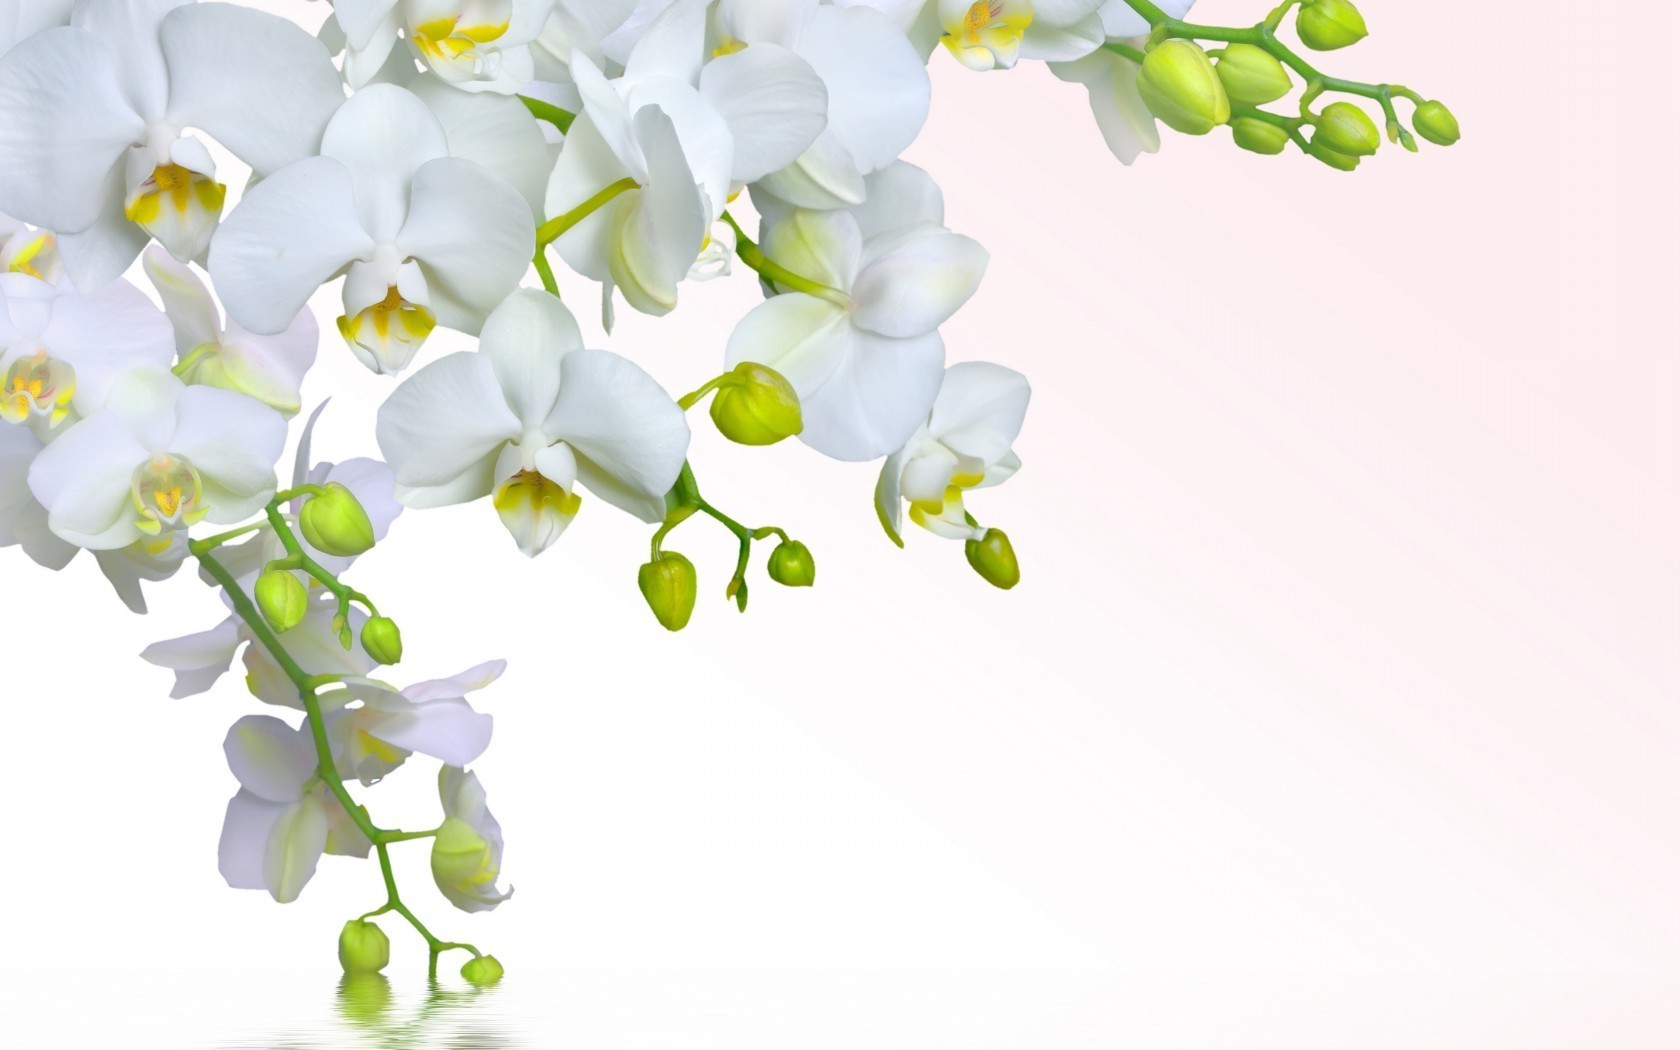 цветы флора природа цветок лист филиал элегантный цветочные орхидеи тропический яркий лето романтика блюминг